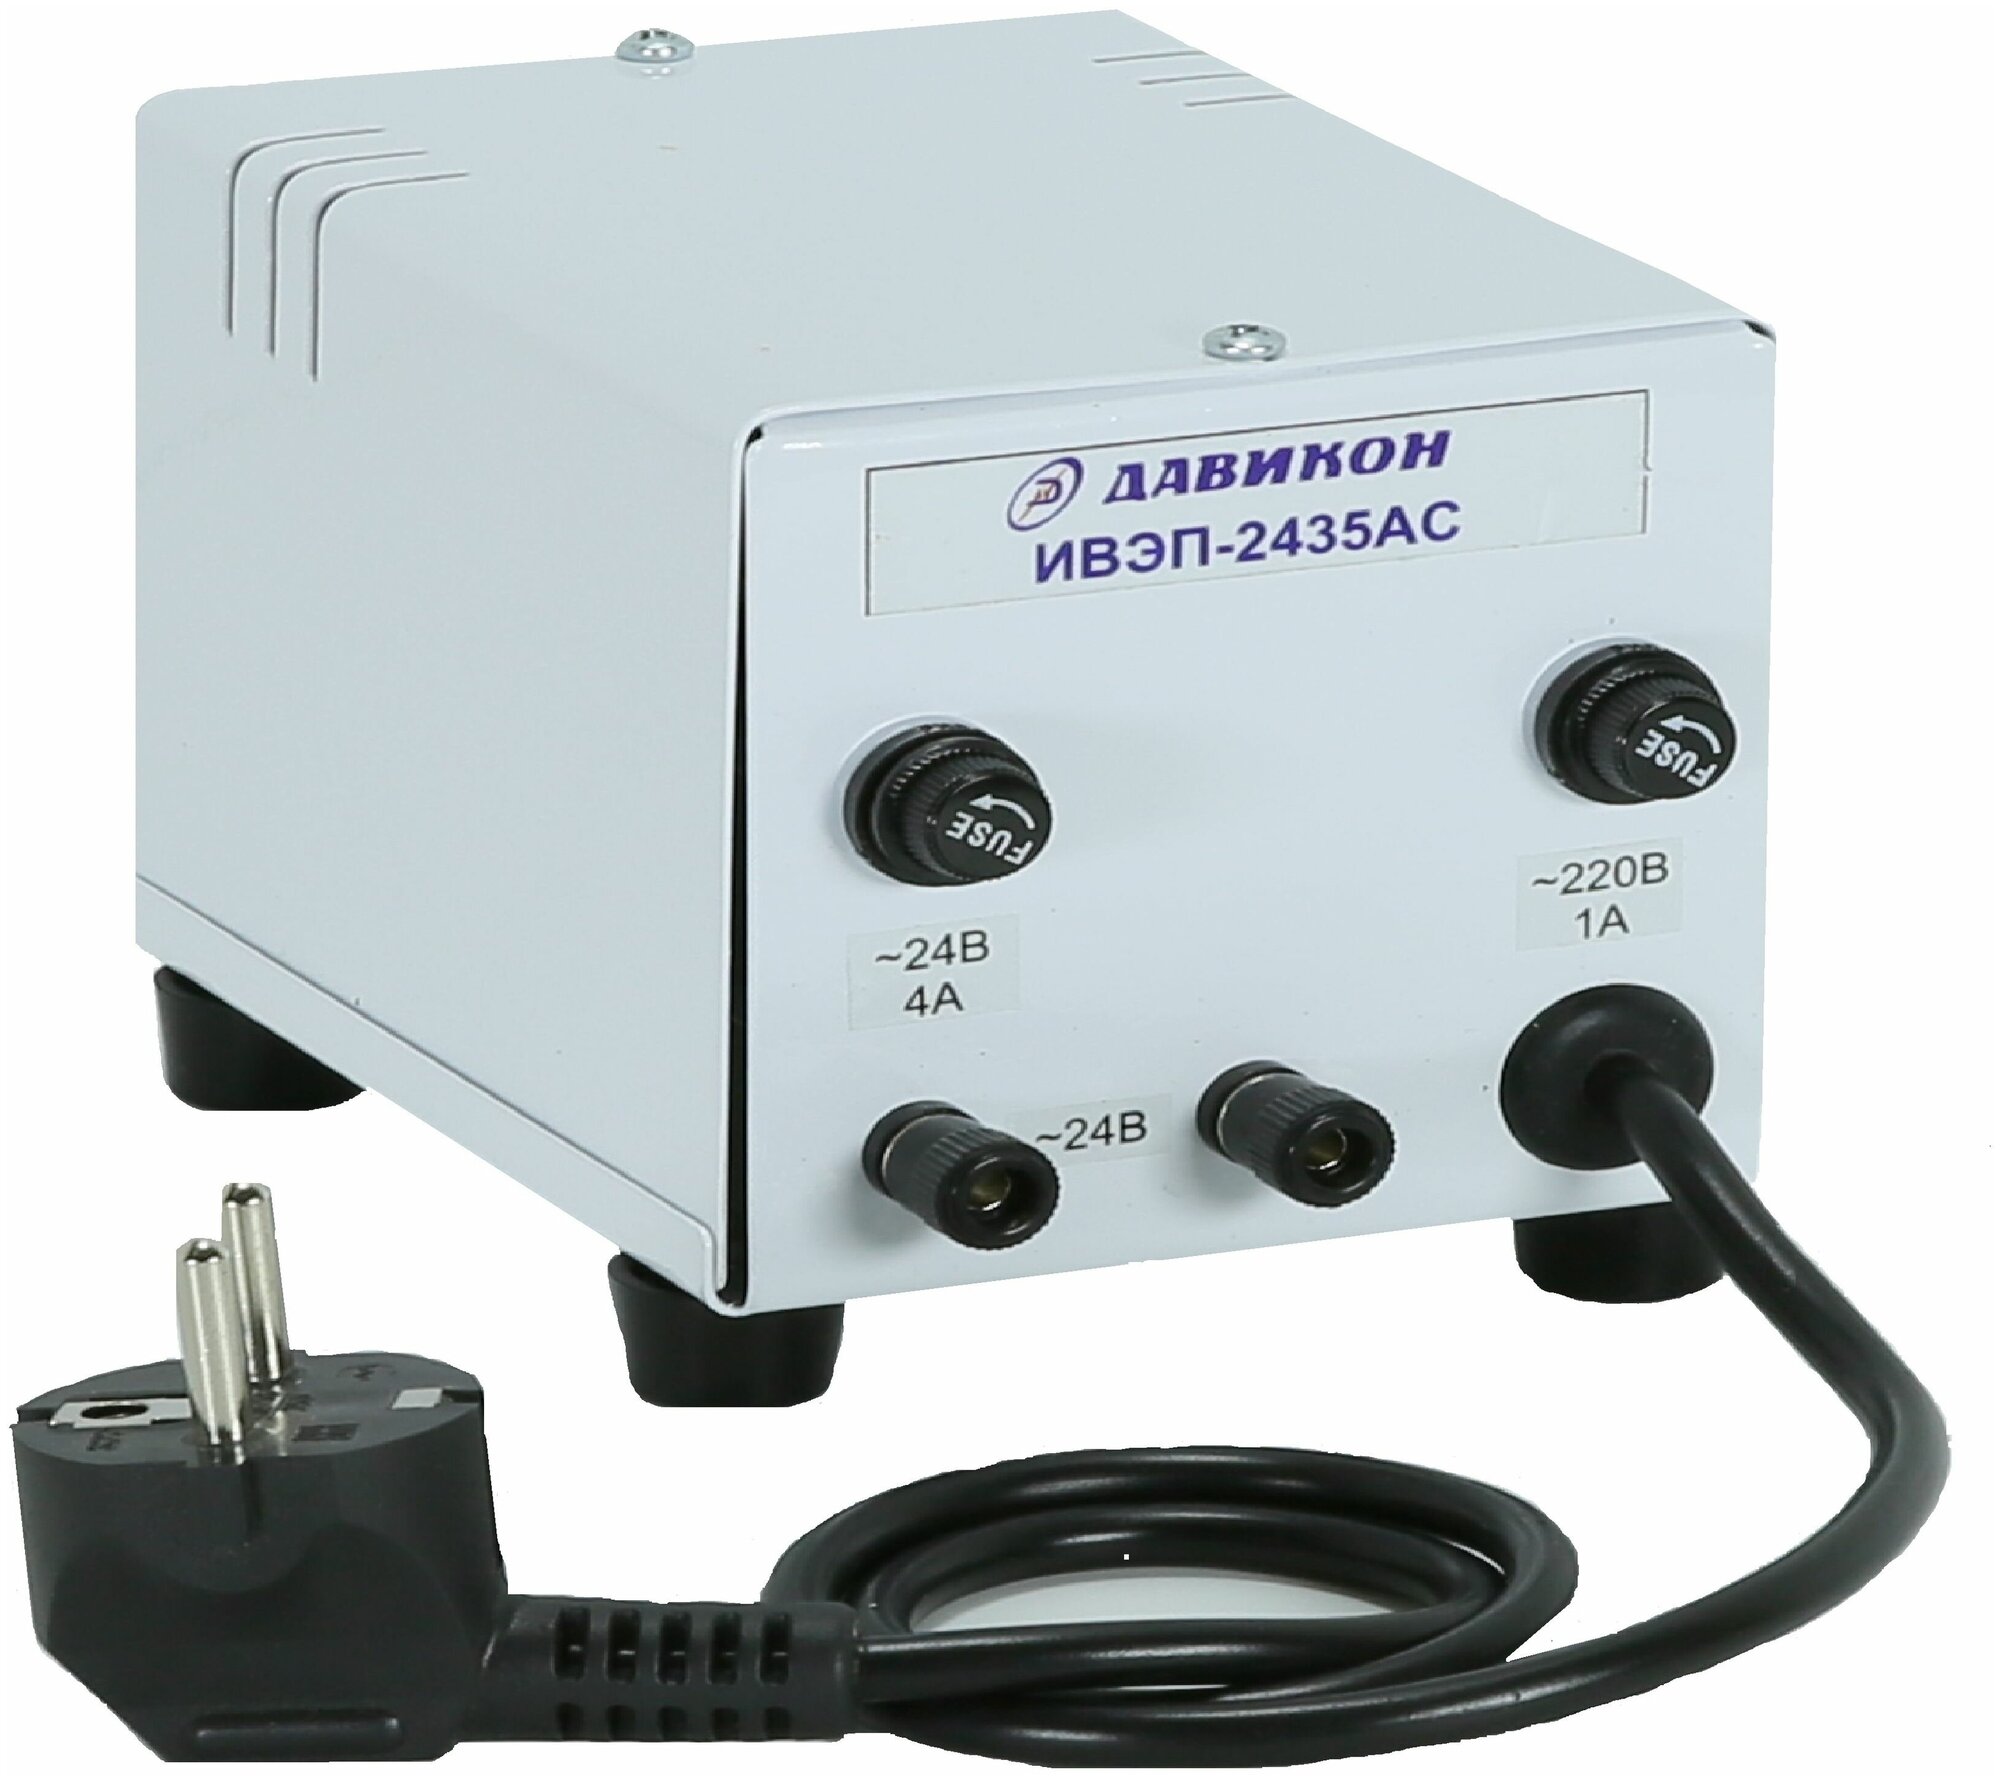 Блок питания AC 24V 3,5a (24В до 3,5А переменного тока), для поворотных видеокамер, вывод на клеммы, (ИВЭП-2435АС)